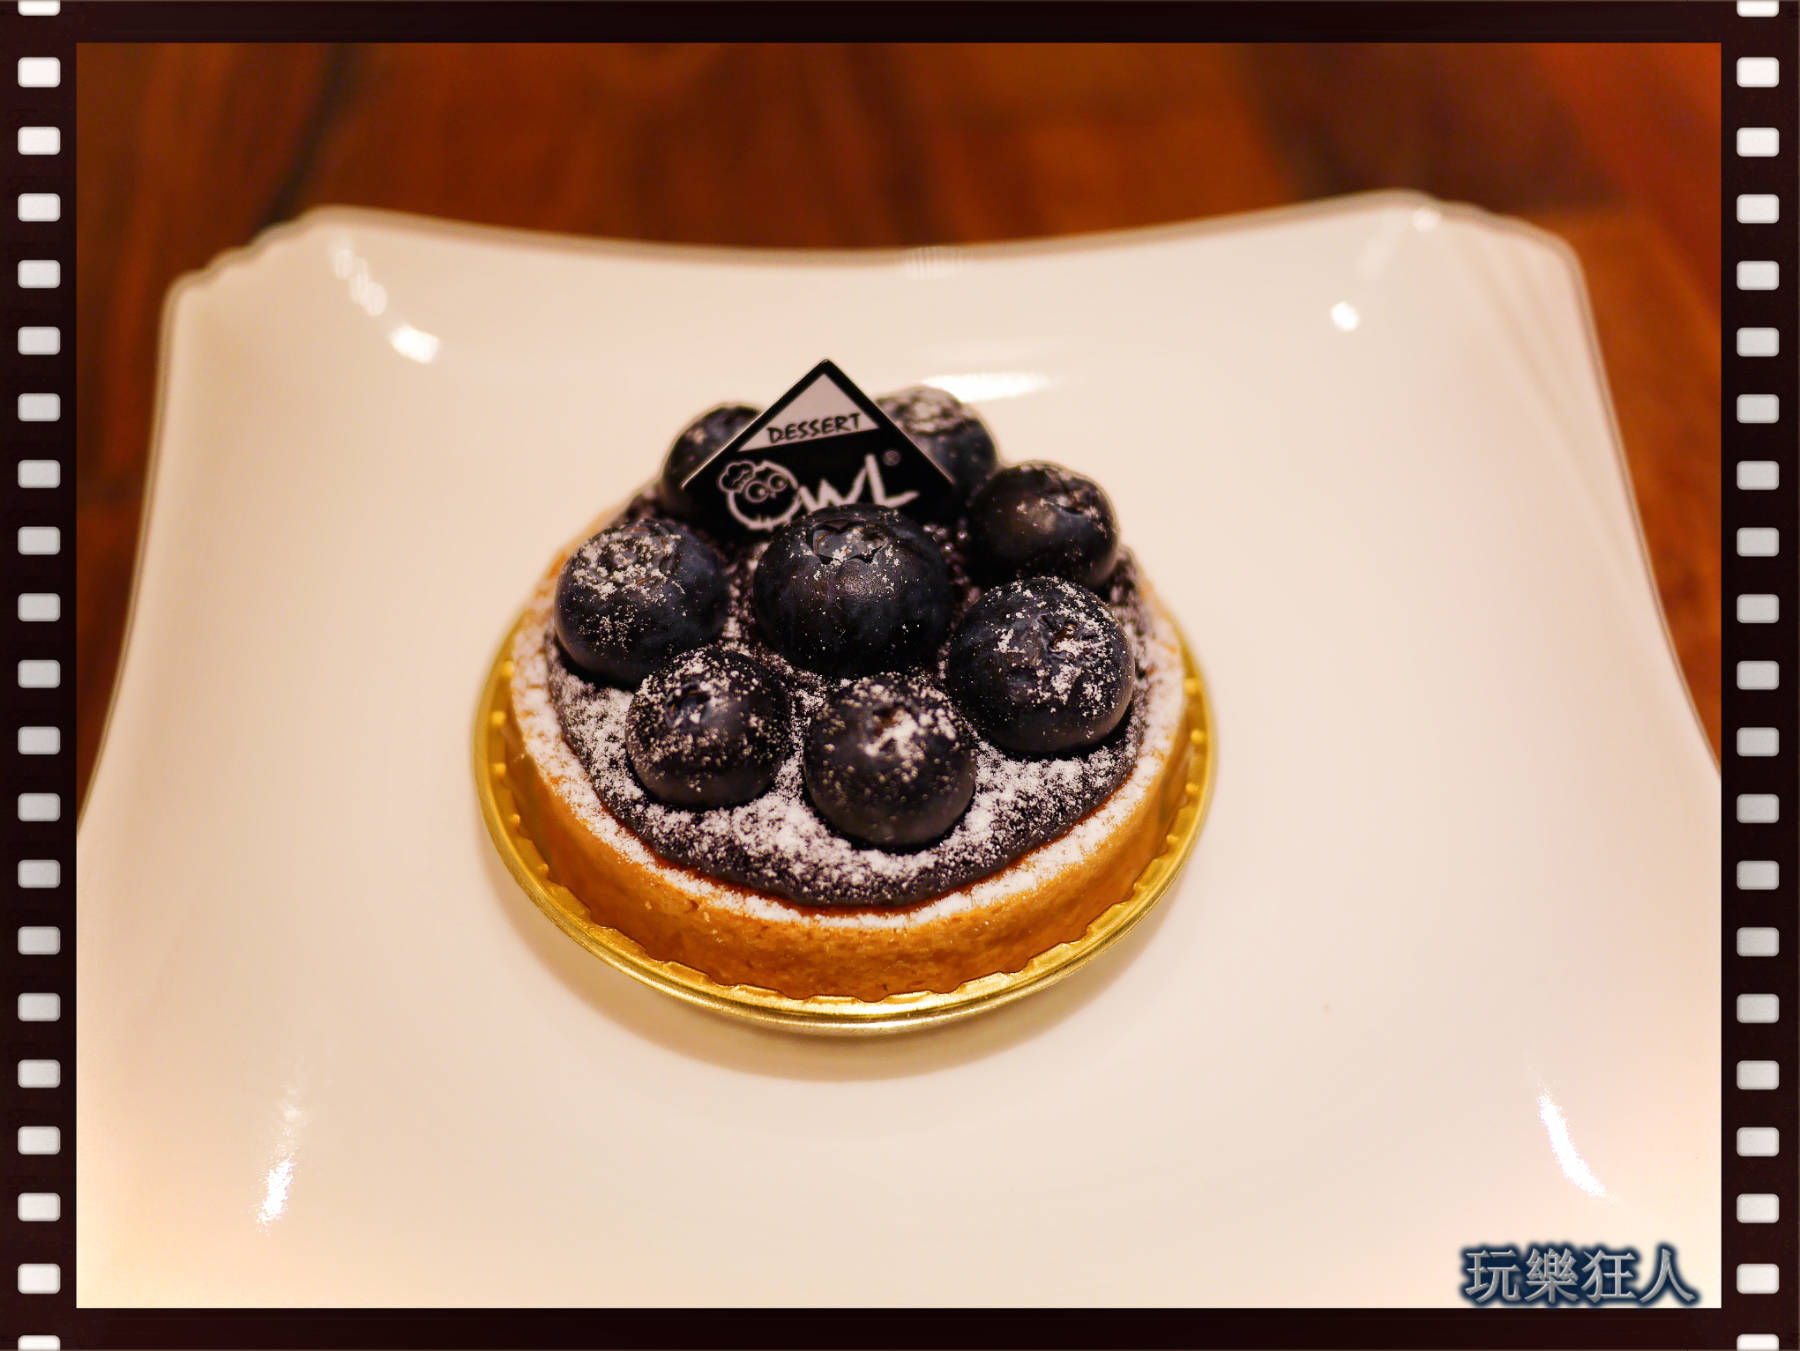 『貓頭鷹法式手工甜點 』咖啡廳-藍莓奶油杏仁塔